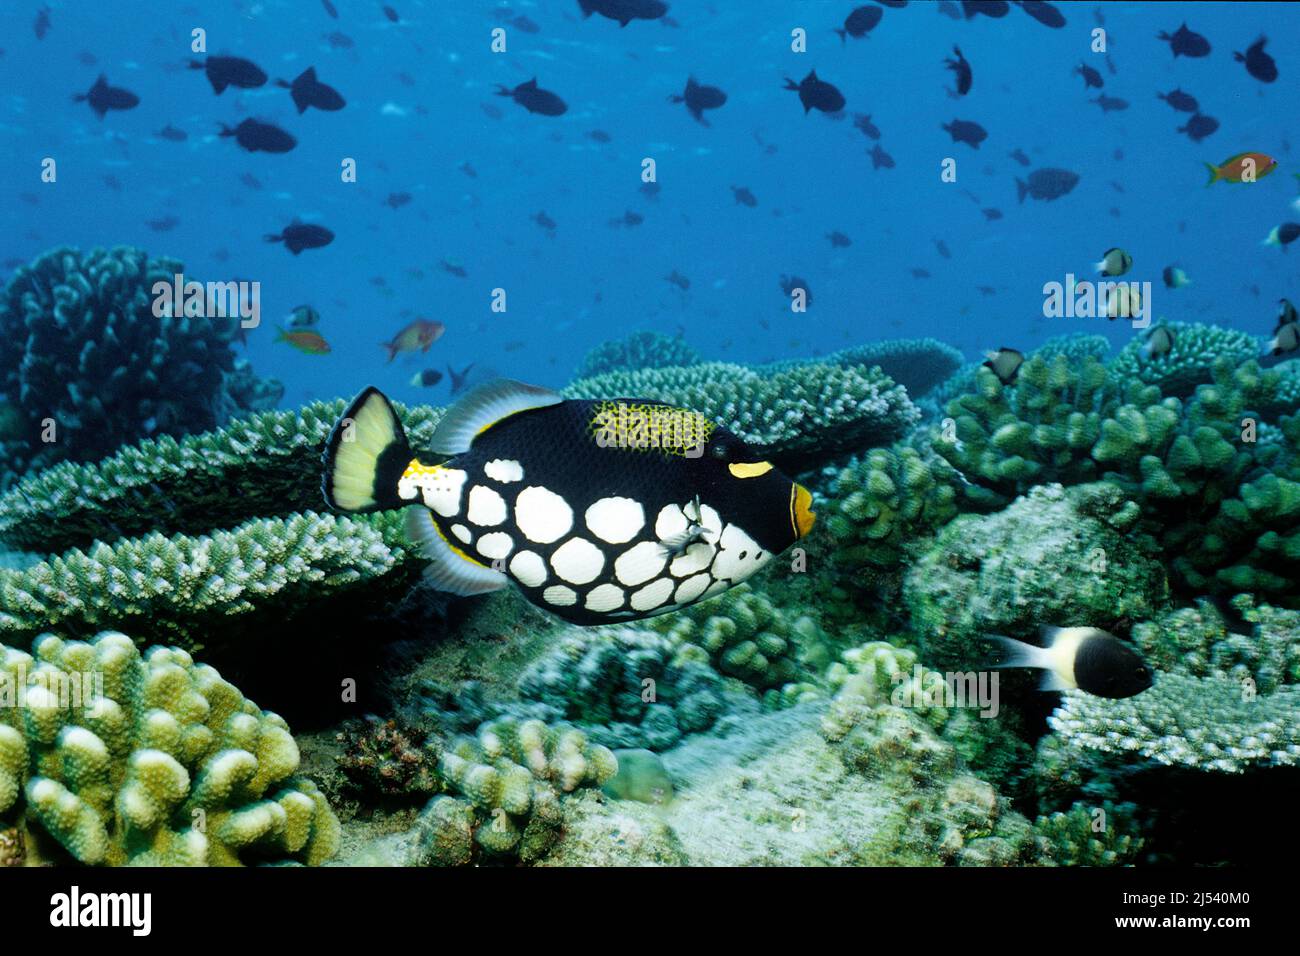 Clown-Triggerfische oder Großfleckige Triggerfische (Balistoides concisillum) schwimmen in einem Korallenriff, Ari-Atoll, Malediven, Indischer Ozean, Asien Stockfoto